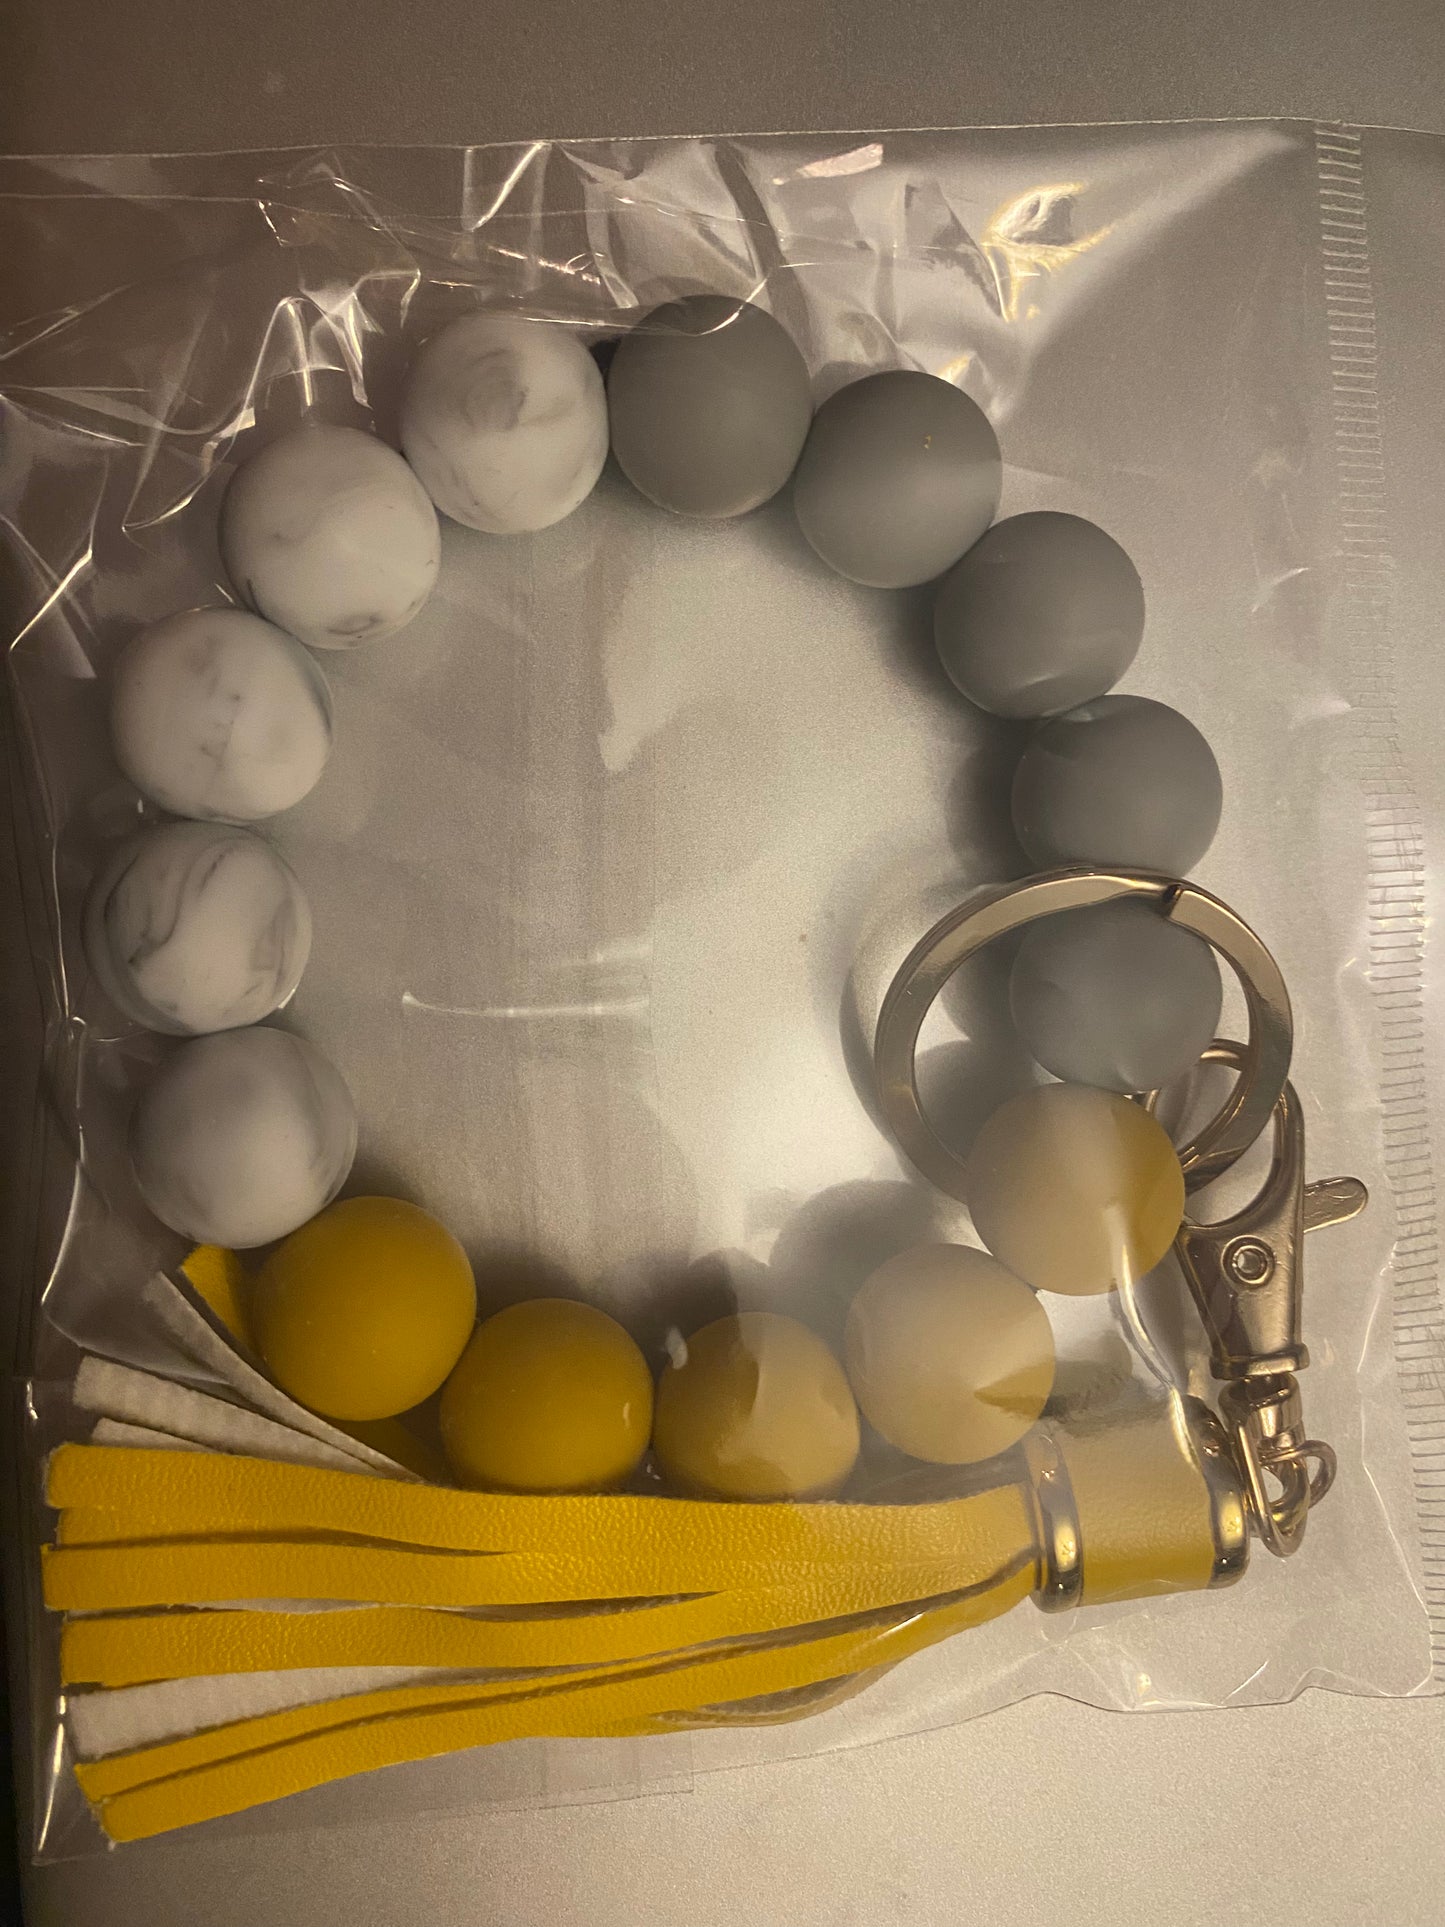 Silicone Bead Keychain Bracelets